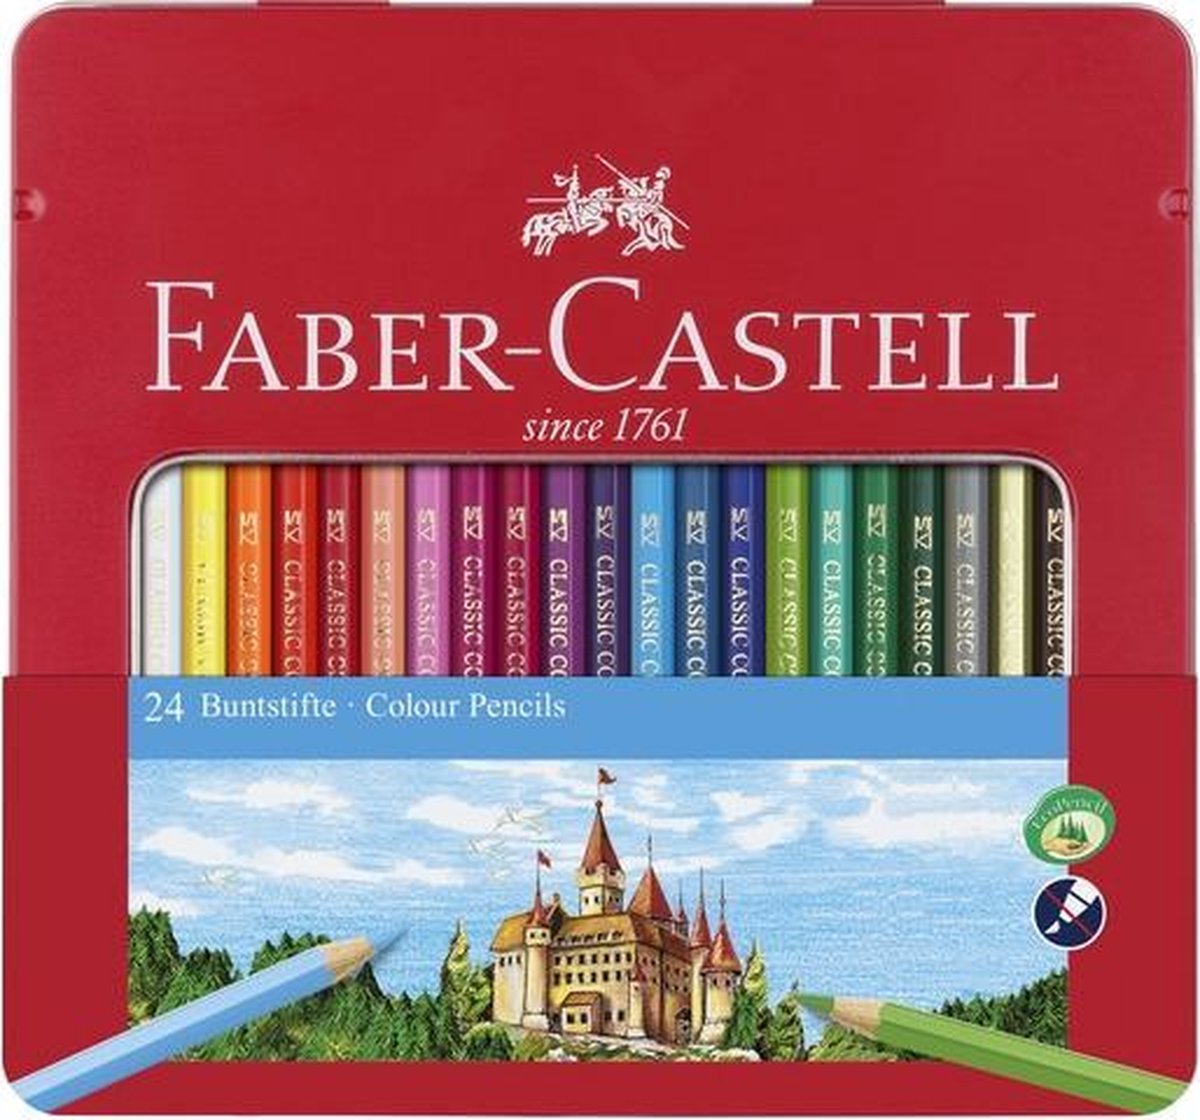 Faber-Castell kleurpotloden - Castle - blik 24 stuks - FC-115824